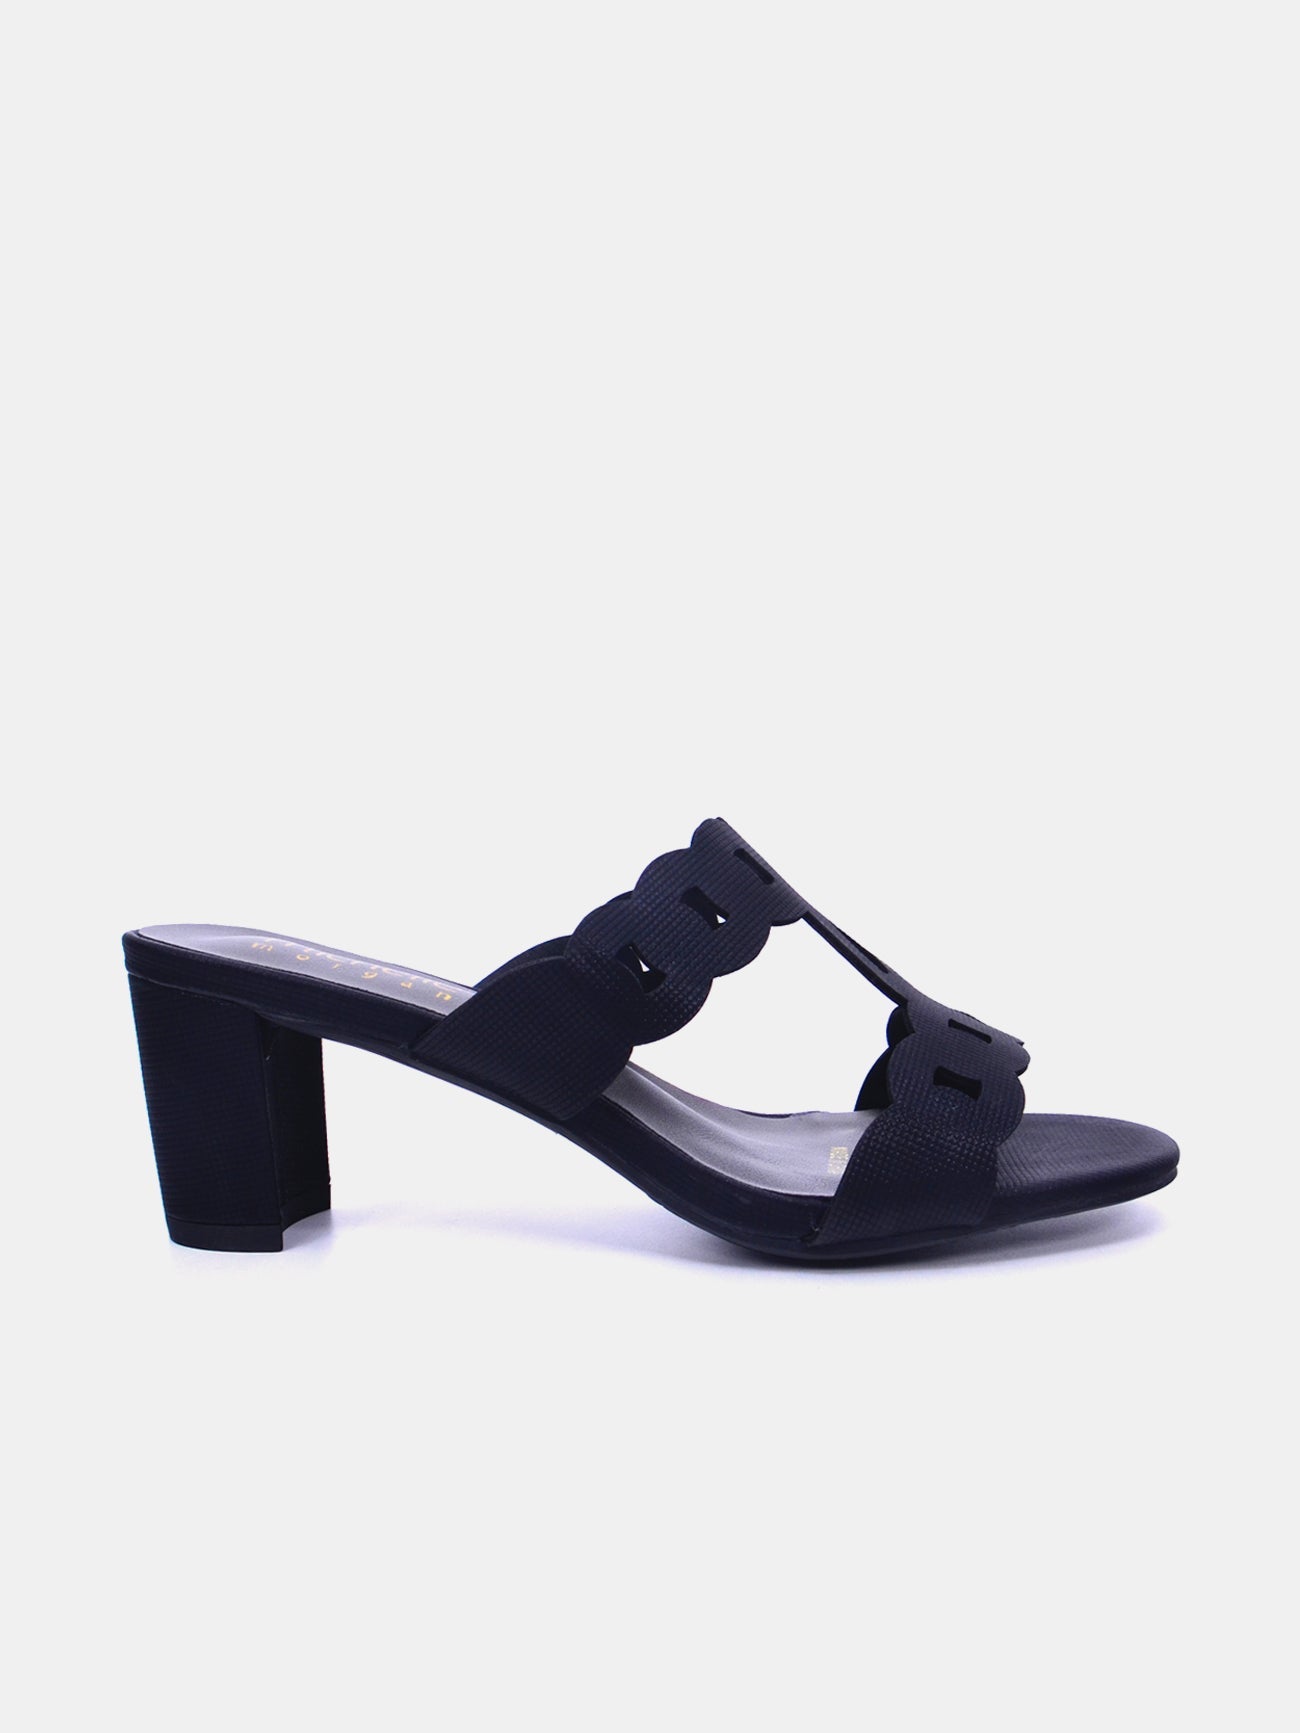 Michelle Morgan 314RJ198 Women's Heeled Sandals #color_Black